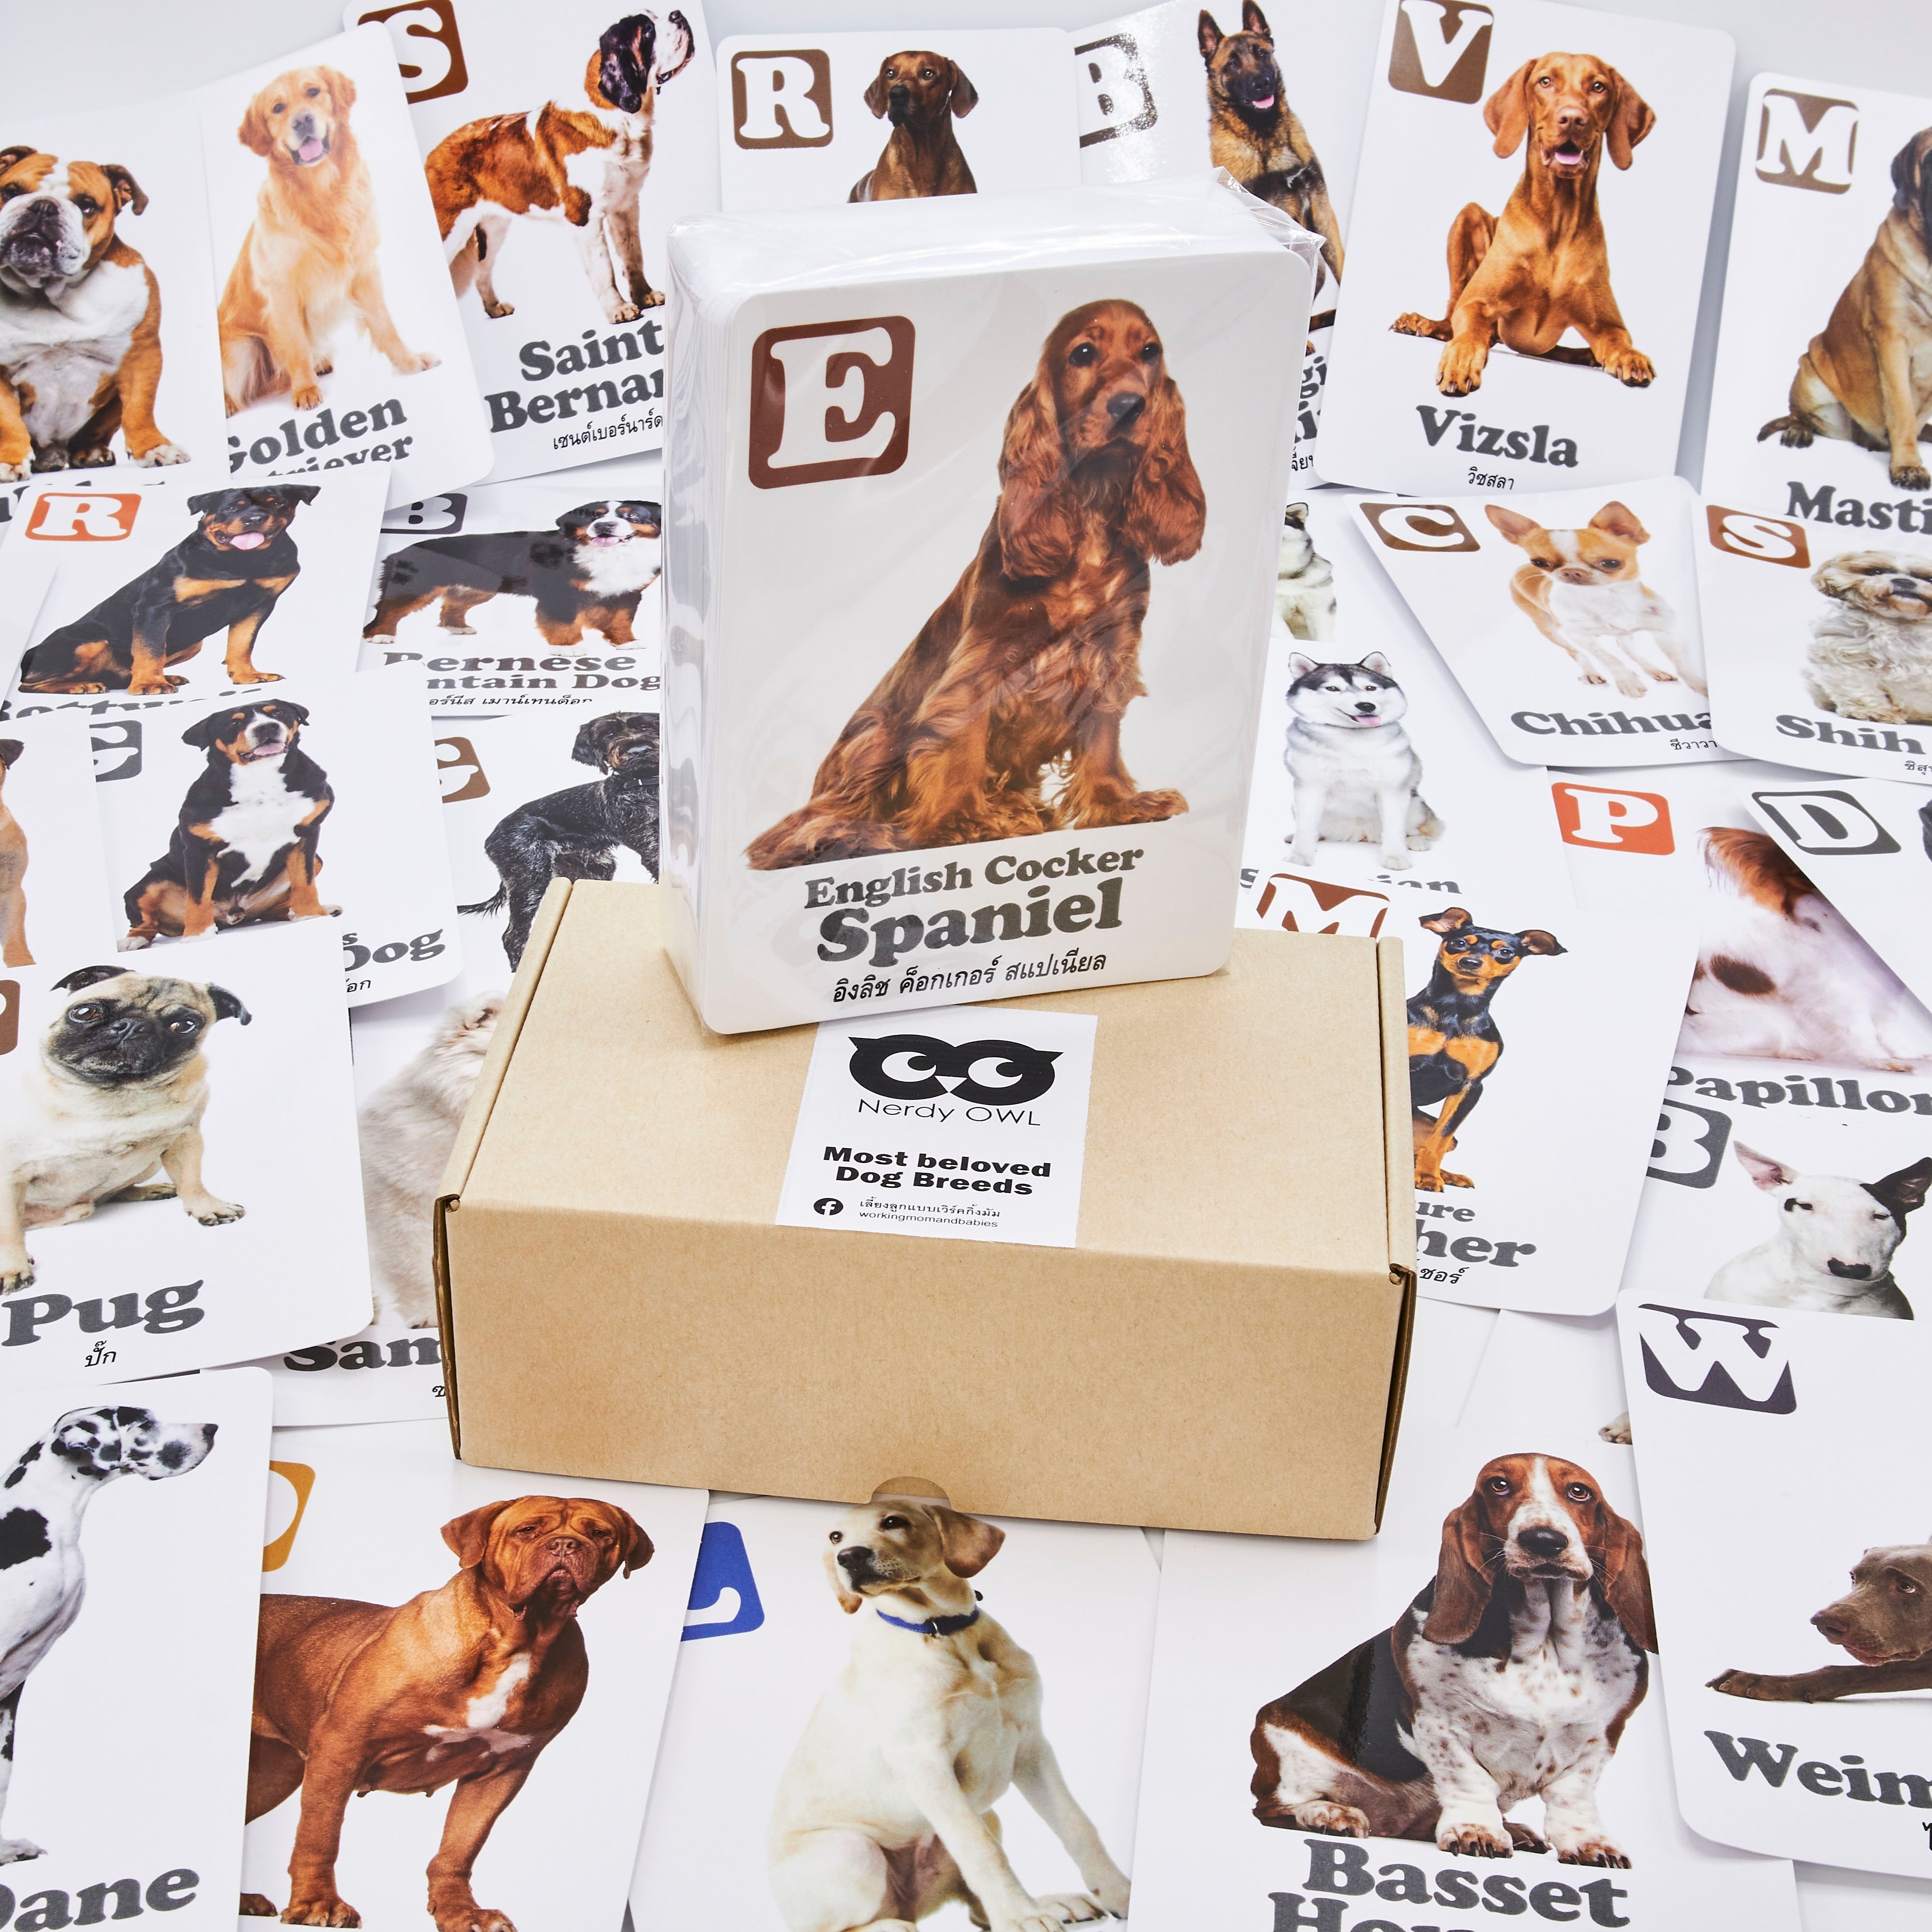 แฟลชการ์ด พันธุ์สุนัข Flash Cards Most Beloved Dog Breeds บัตรคำ การ์ดคำศัพท์ เนิร์ดดี้อาว (Nerdy Owl) จำนวนมากที่สุดถึง 108 ใบ ของเล่นเสริมพัฒนาการ